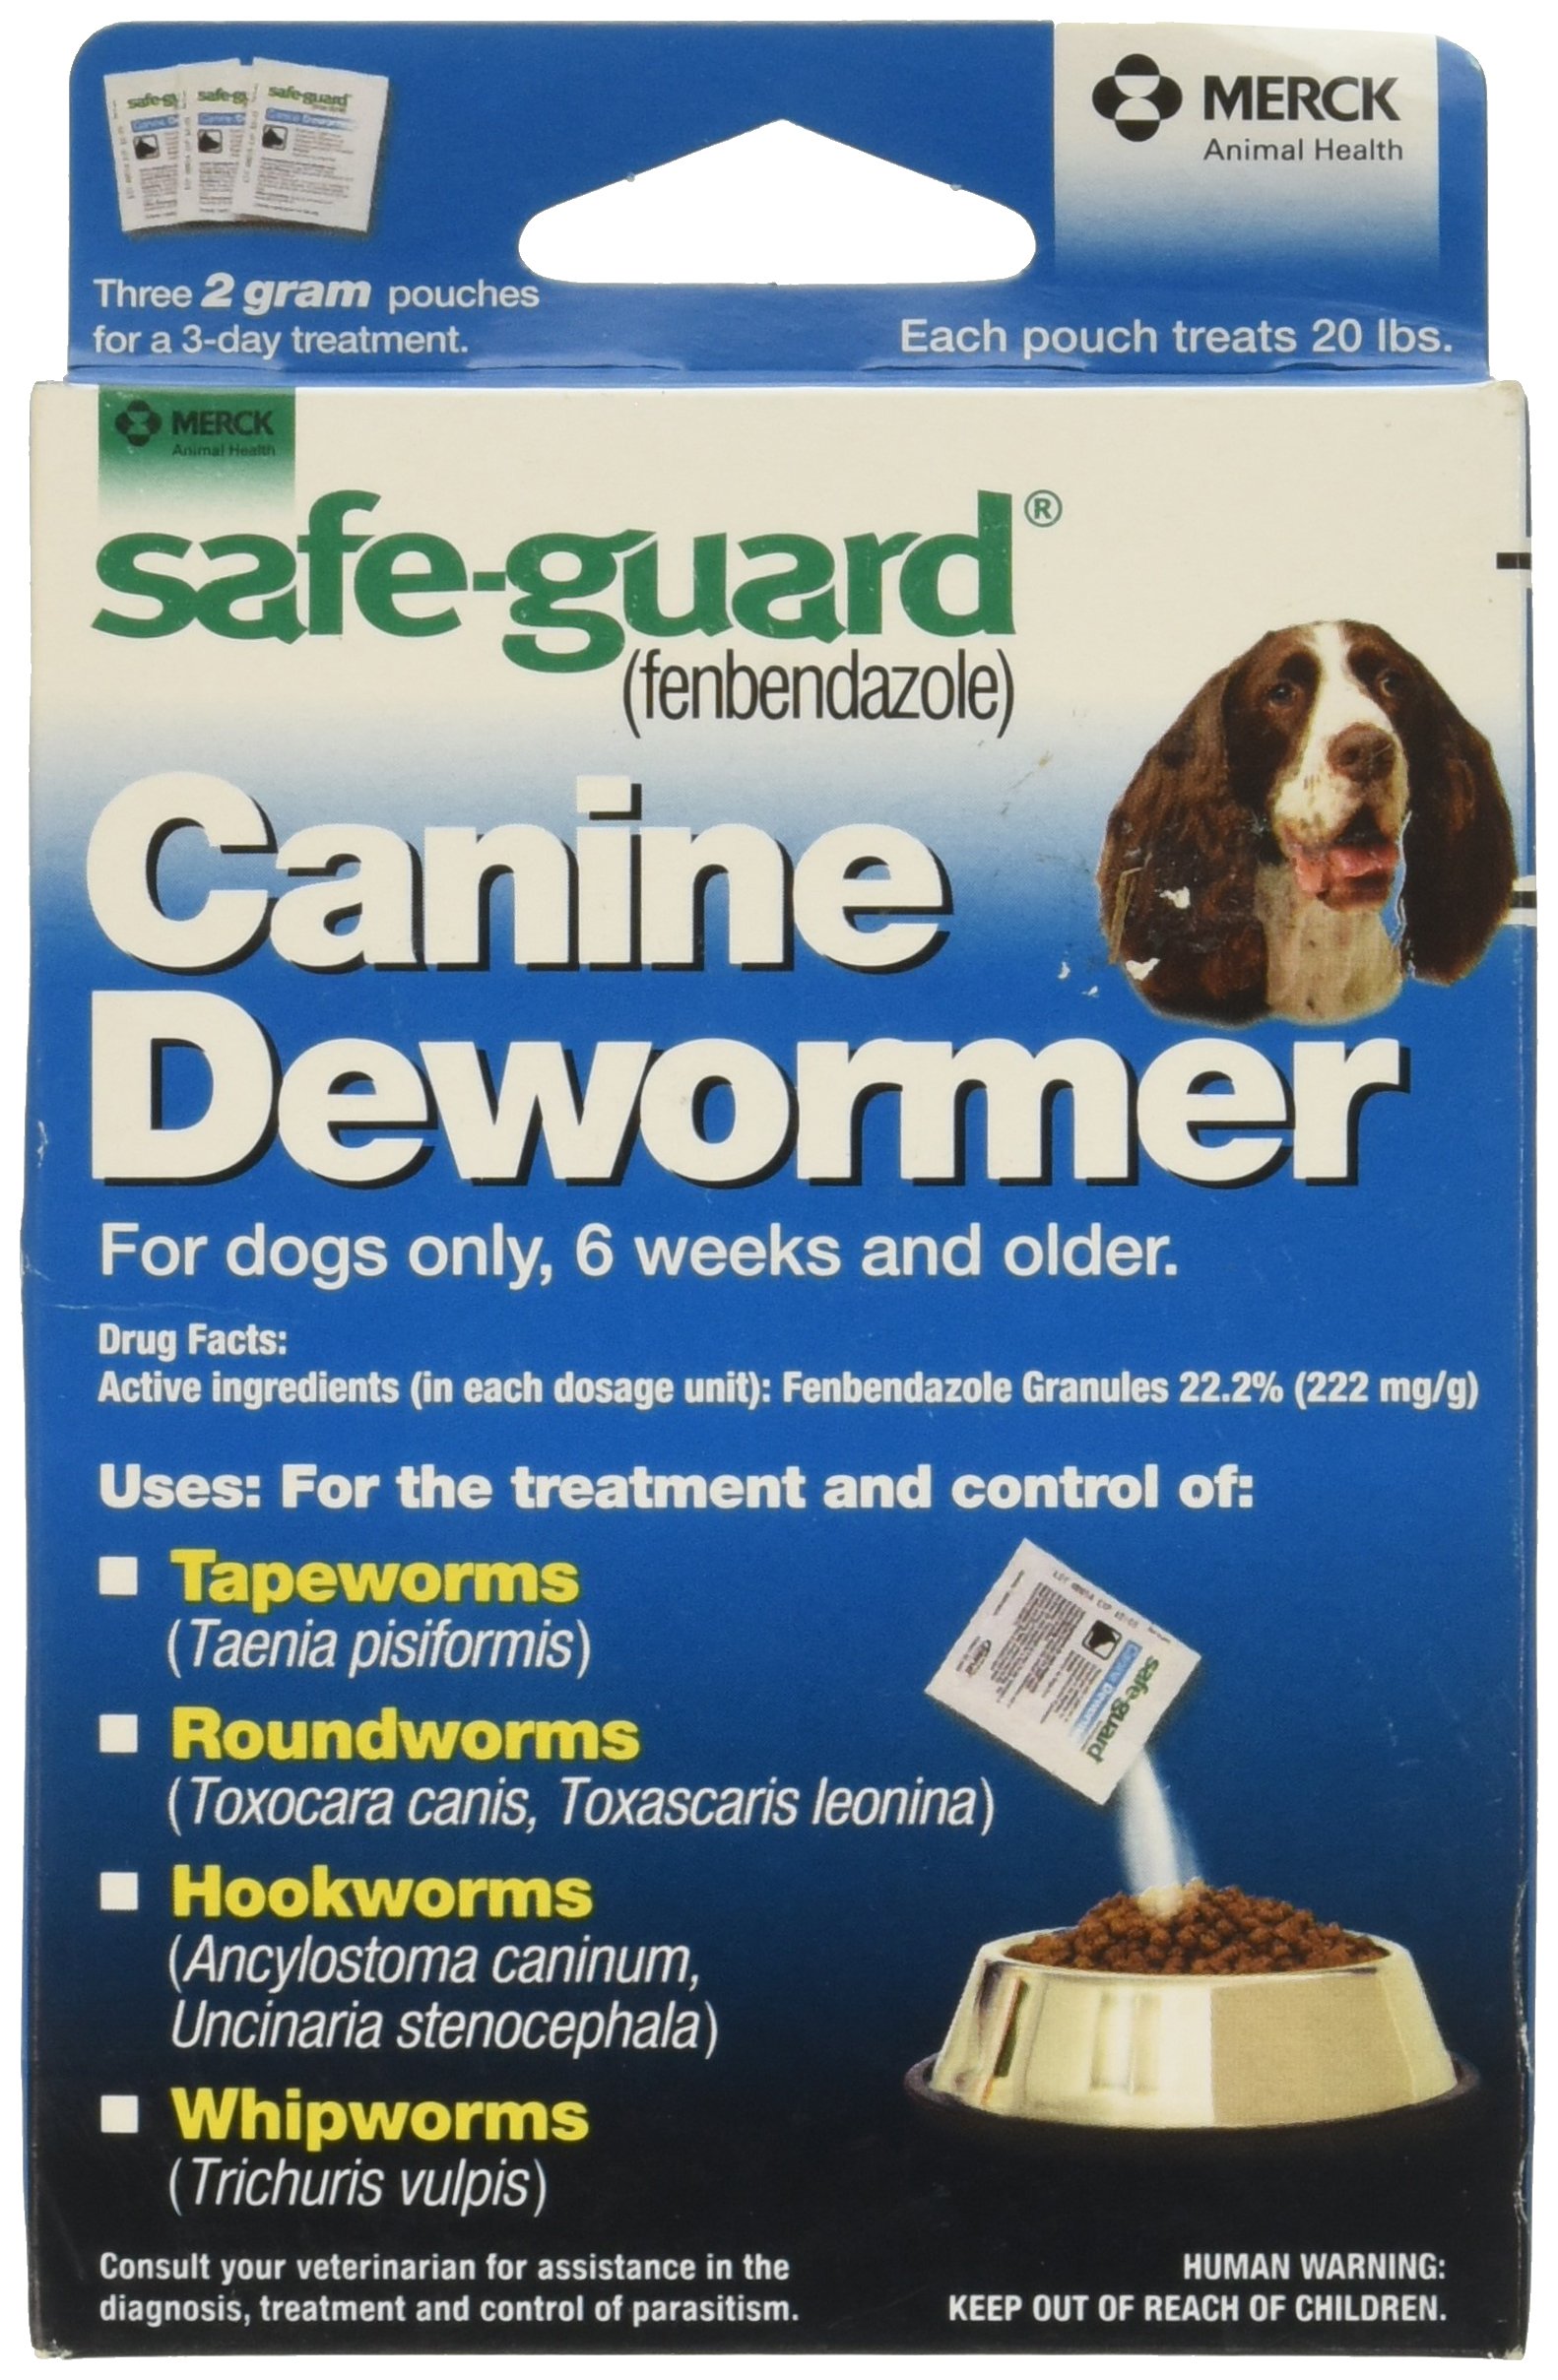 SAFE-GUARD Canine Dewormer